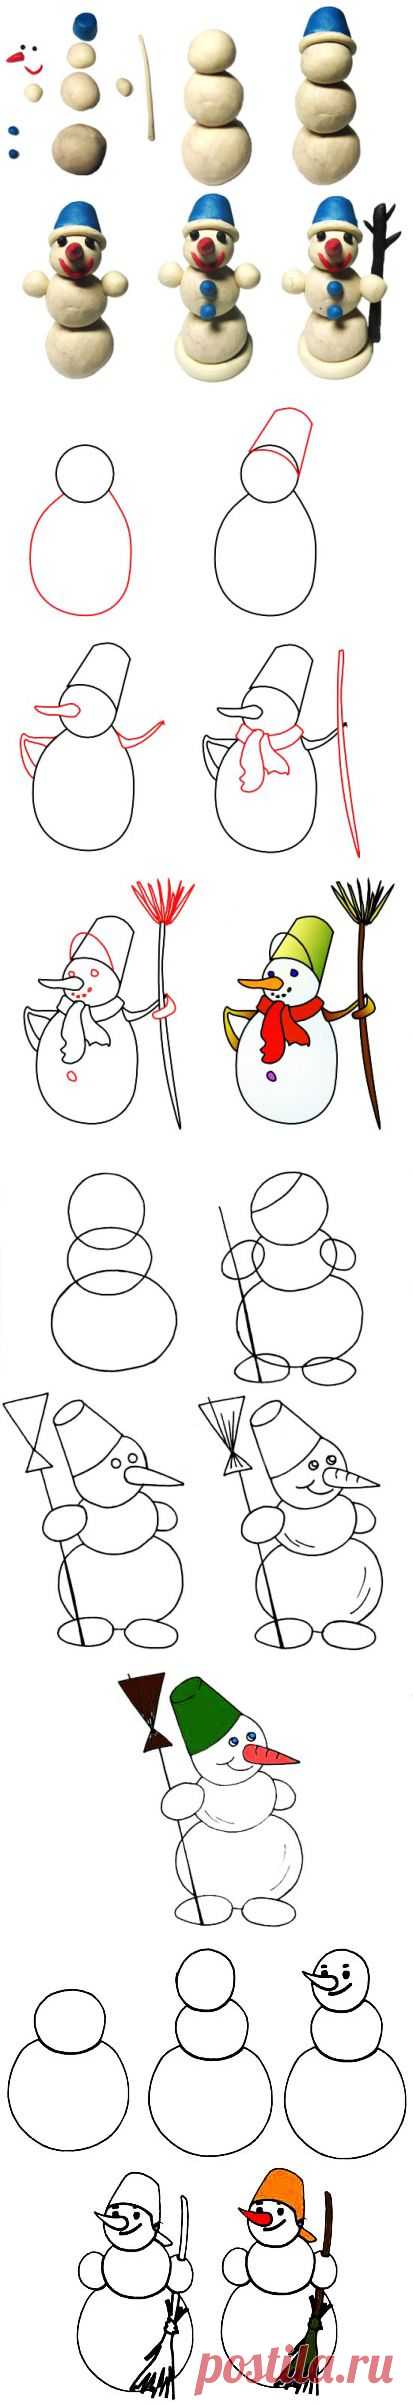 Как лепить - нарисовать - Снеговика?